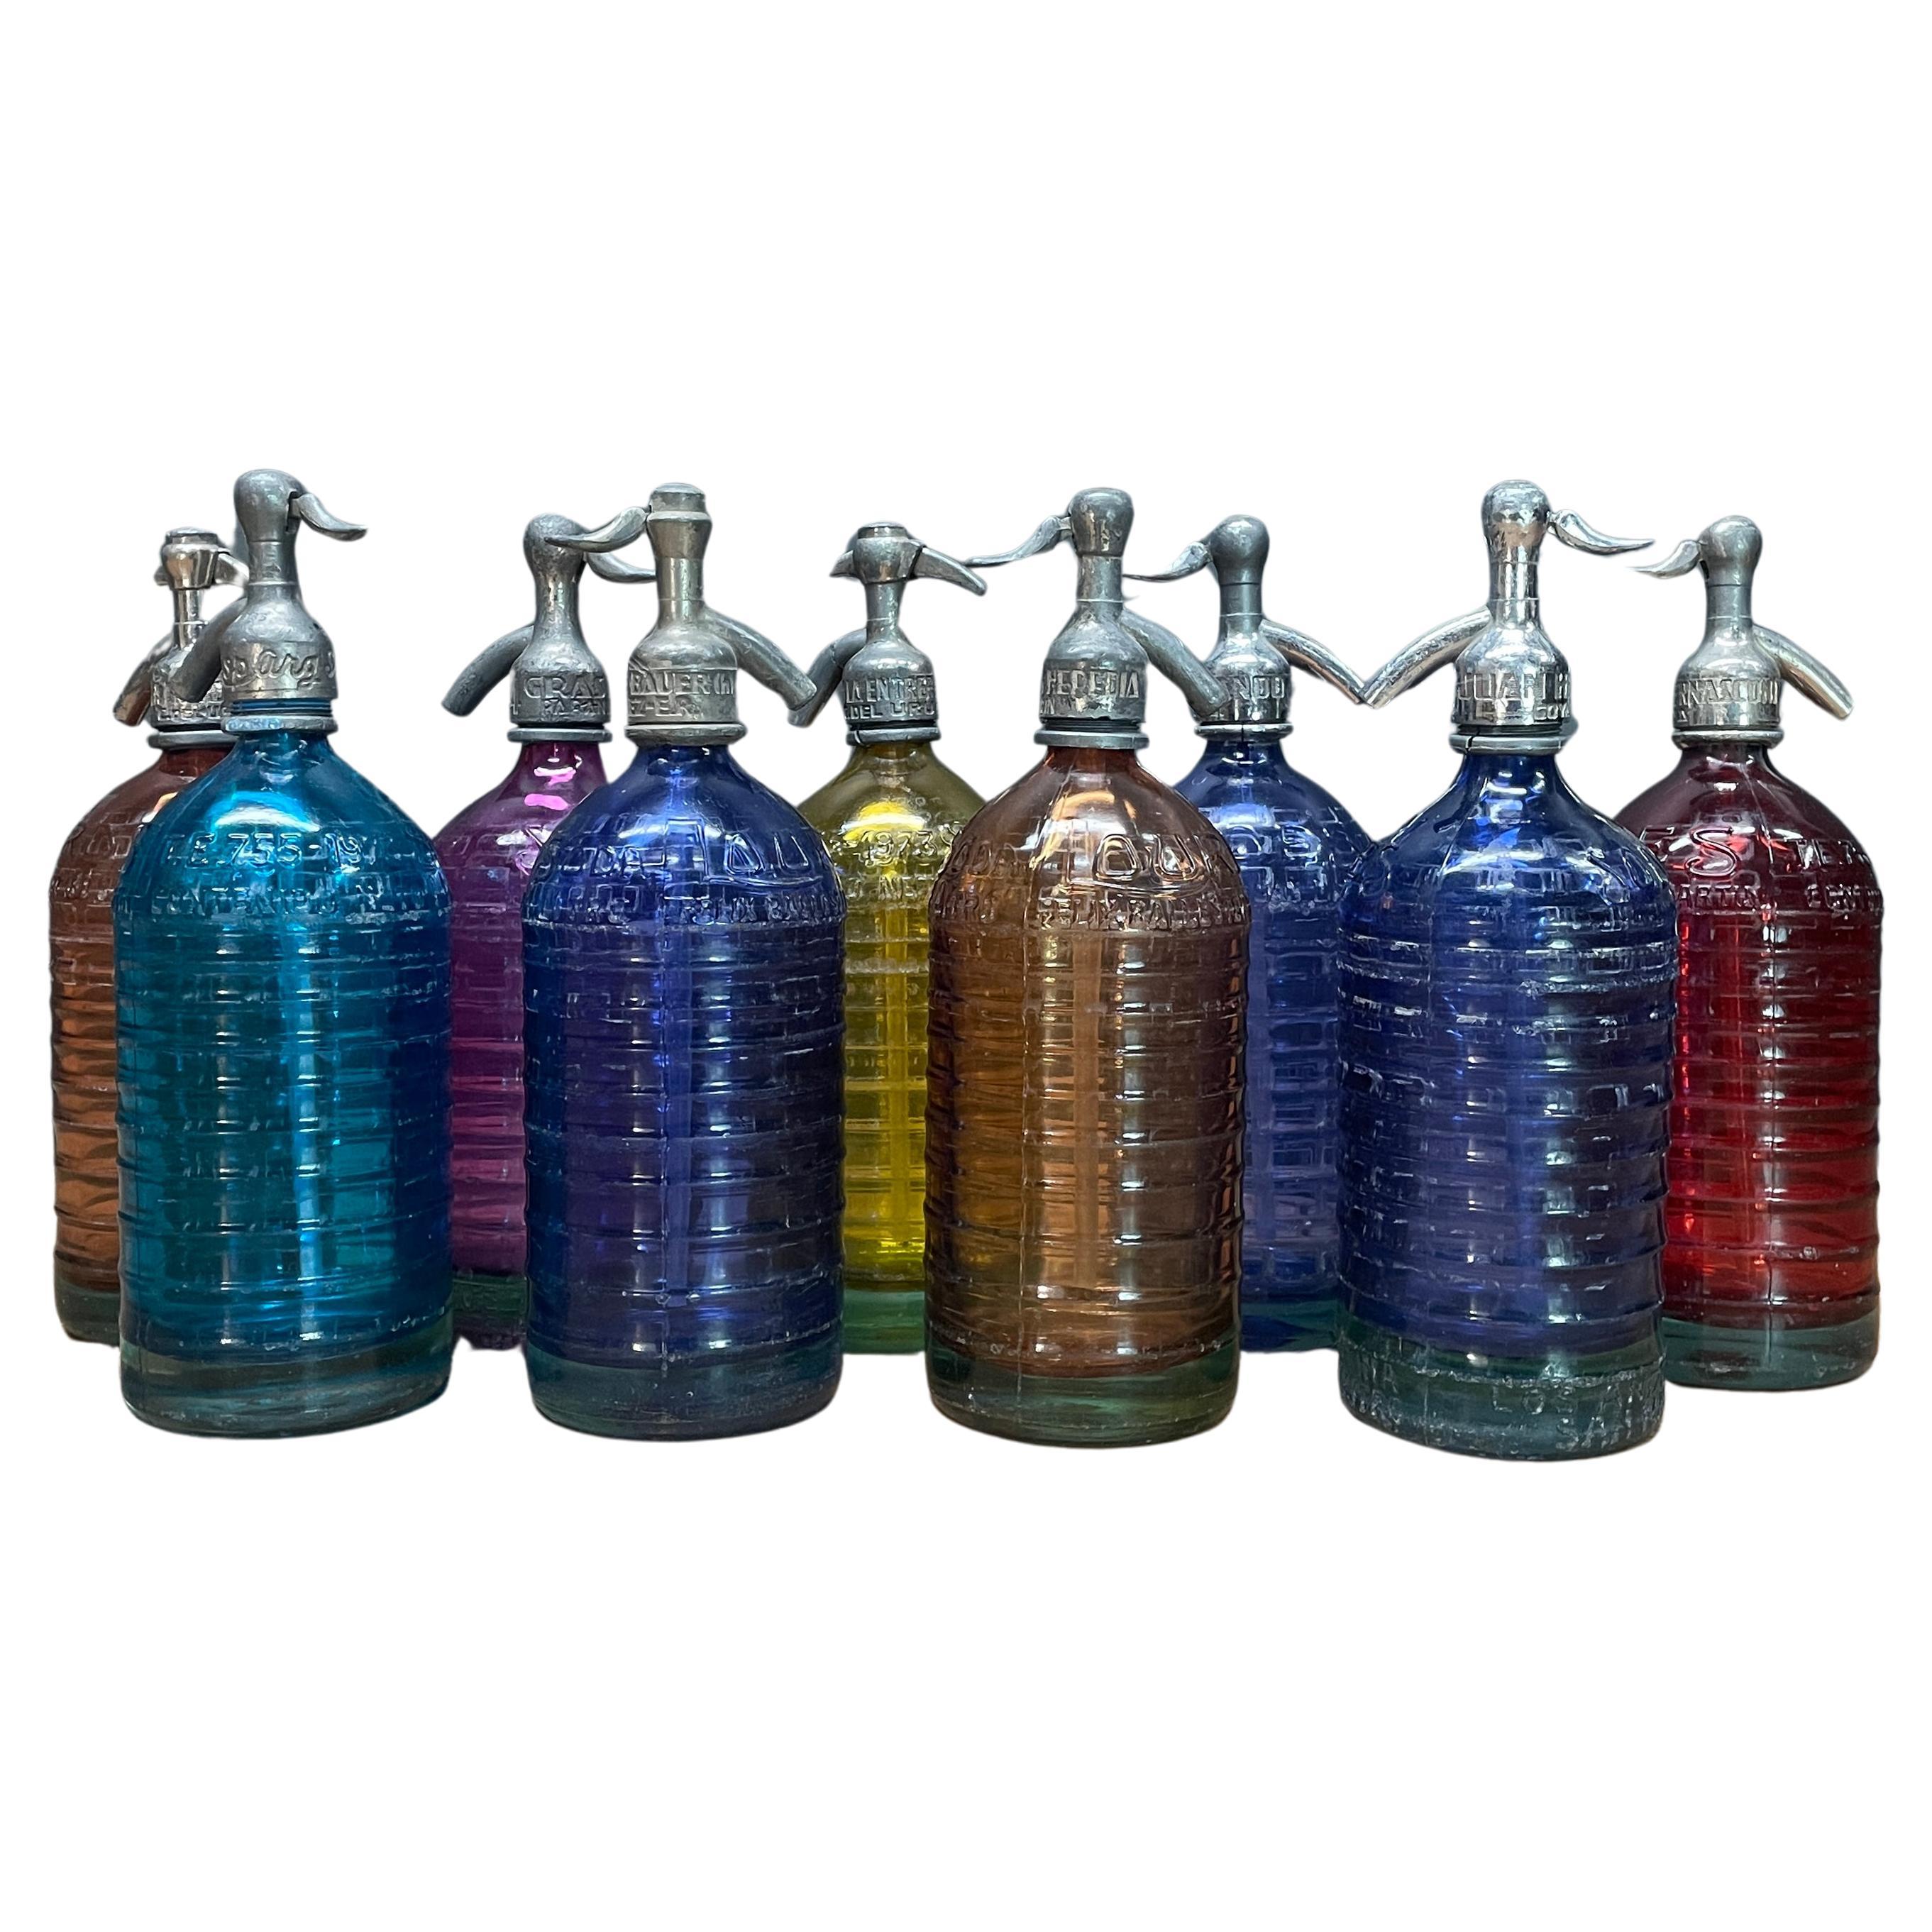 1940s Lourdes Siphon Seltzer Soda Bottle Collection Colorful Glass Vintage Decor